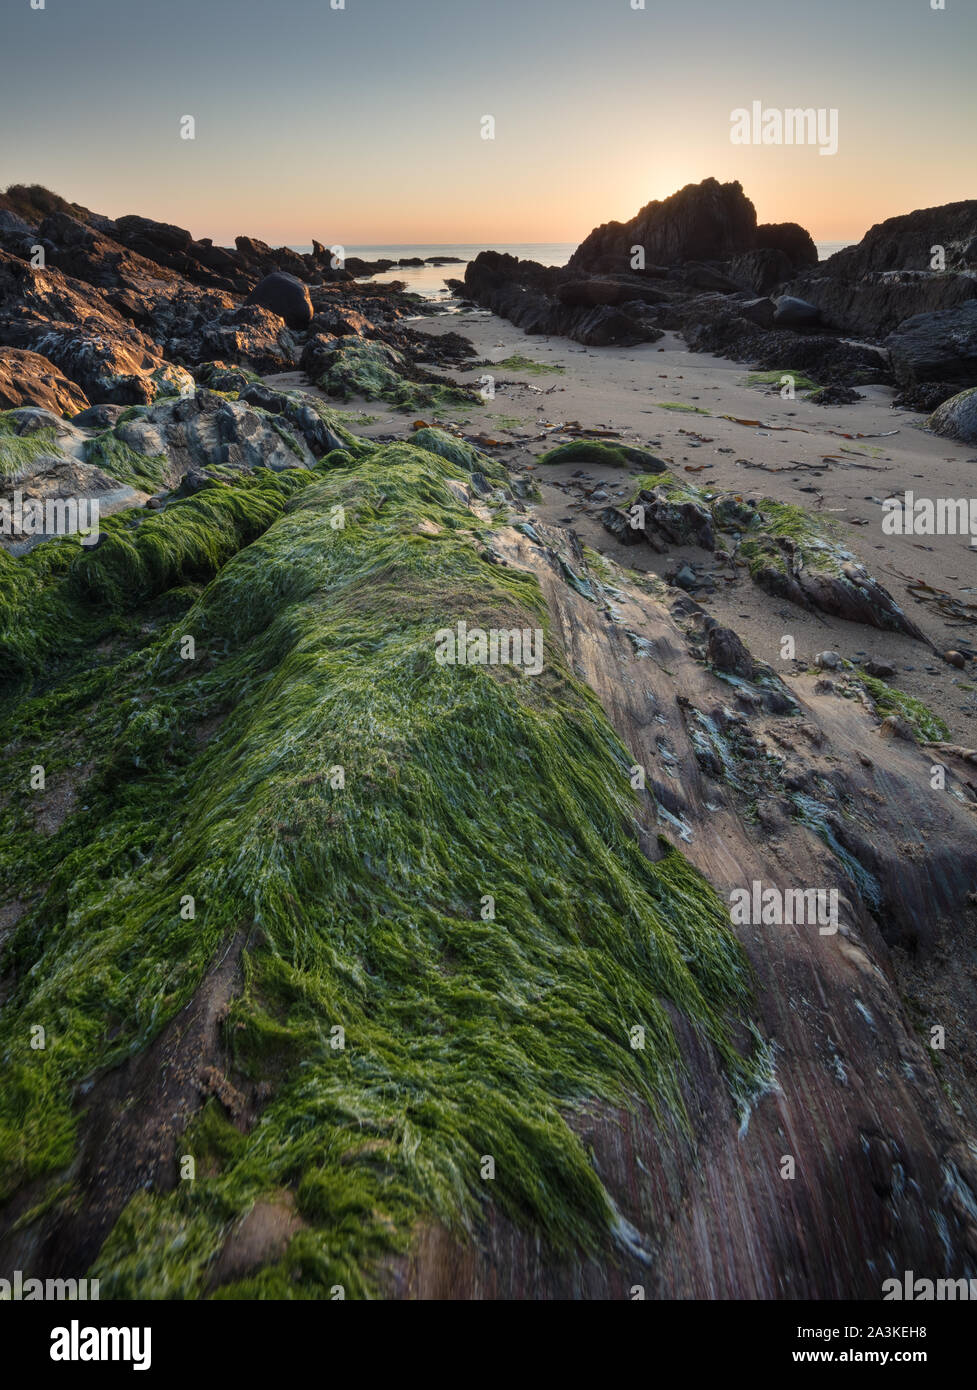 Felsen mit Algen und Flechten am Strand von Kinnagoe Bay bei Sonnenaufgang, Halbinsel Inishowen, Co Donegal, Irland Stockfoto